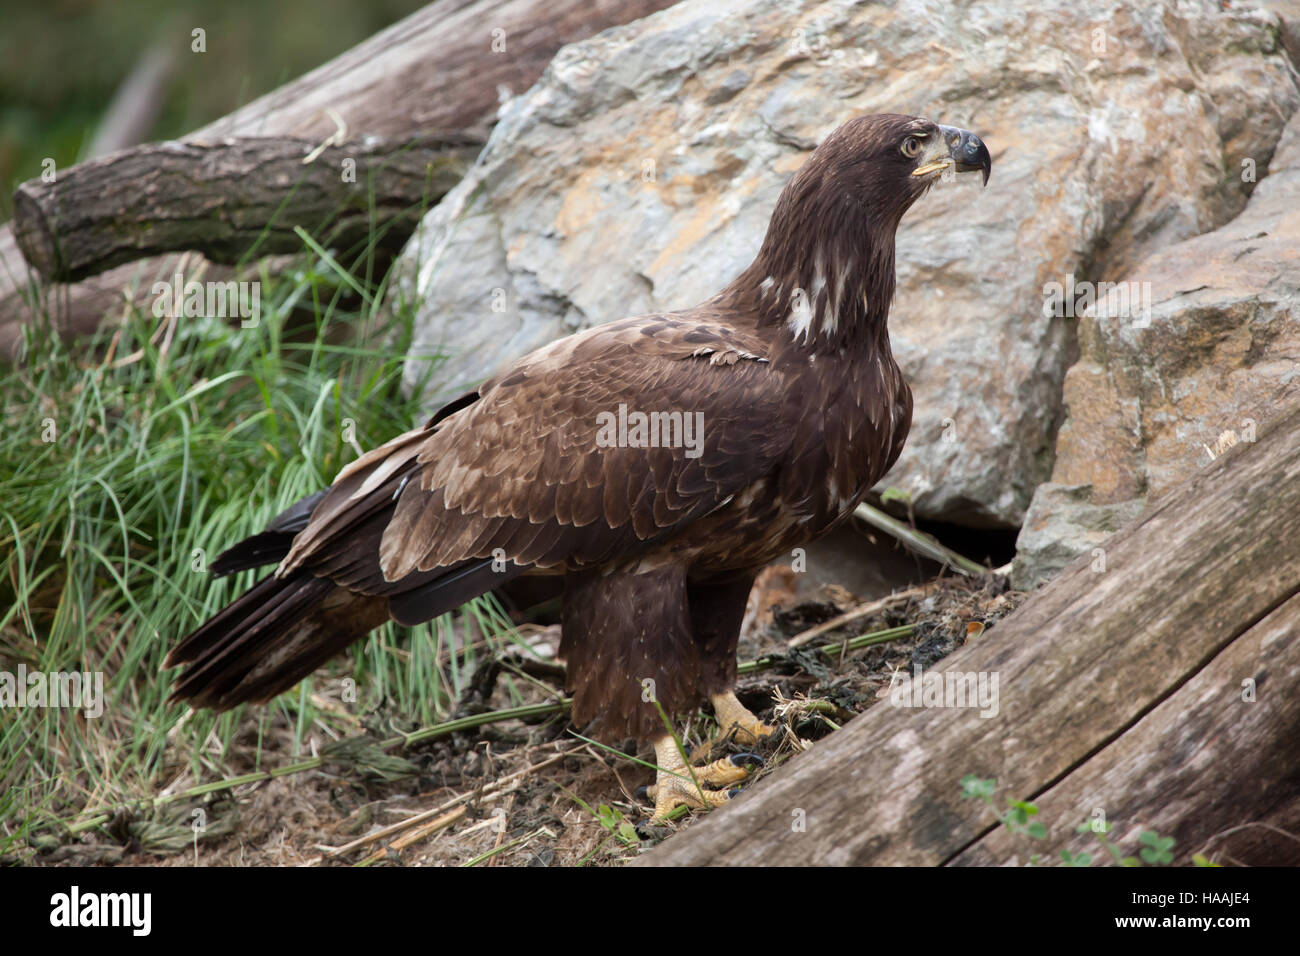 Female bald eagle (Haliaeetus leucocephalus). Wildlife animal. Stock Photo